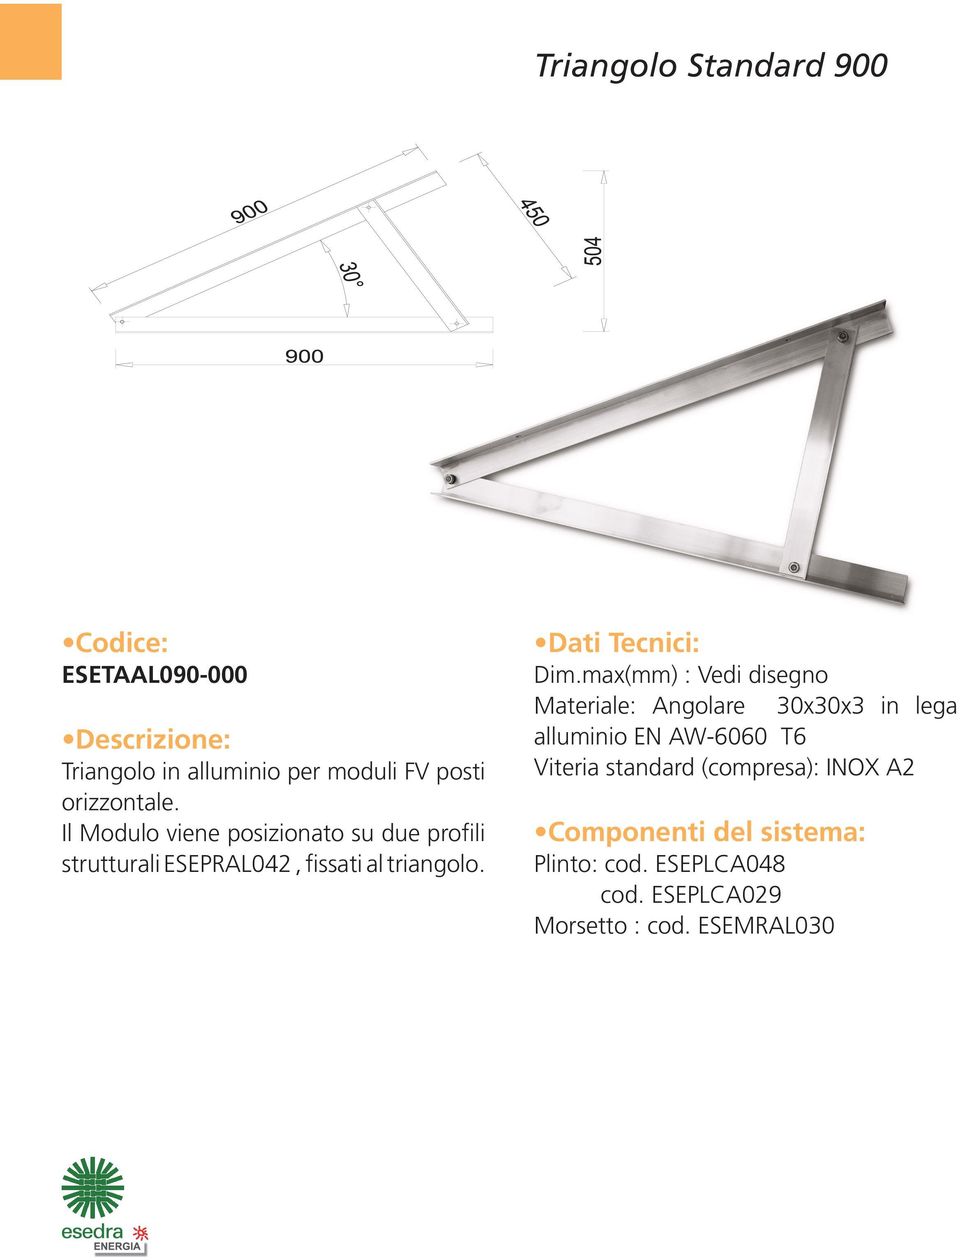 max(mm) : Vedi disegno Materiale: Angolare 30x30x3 in lega alluminio EN AW-6060 T6 Viteria standard